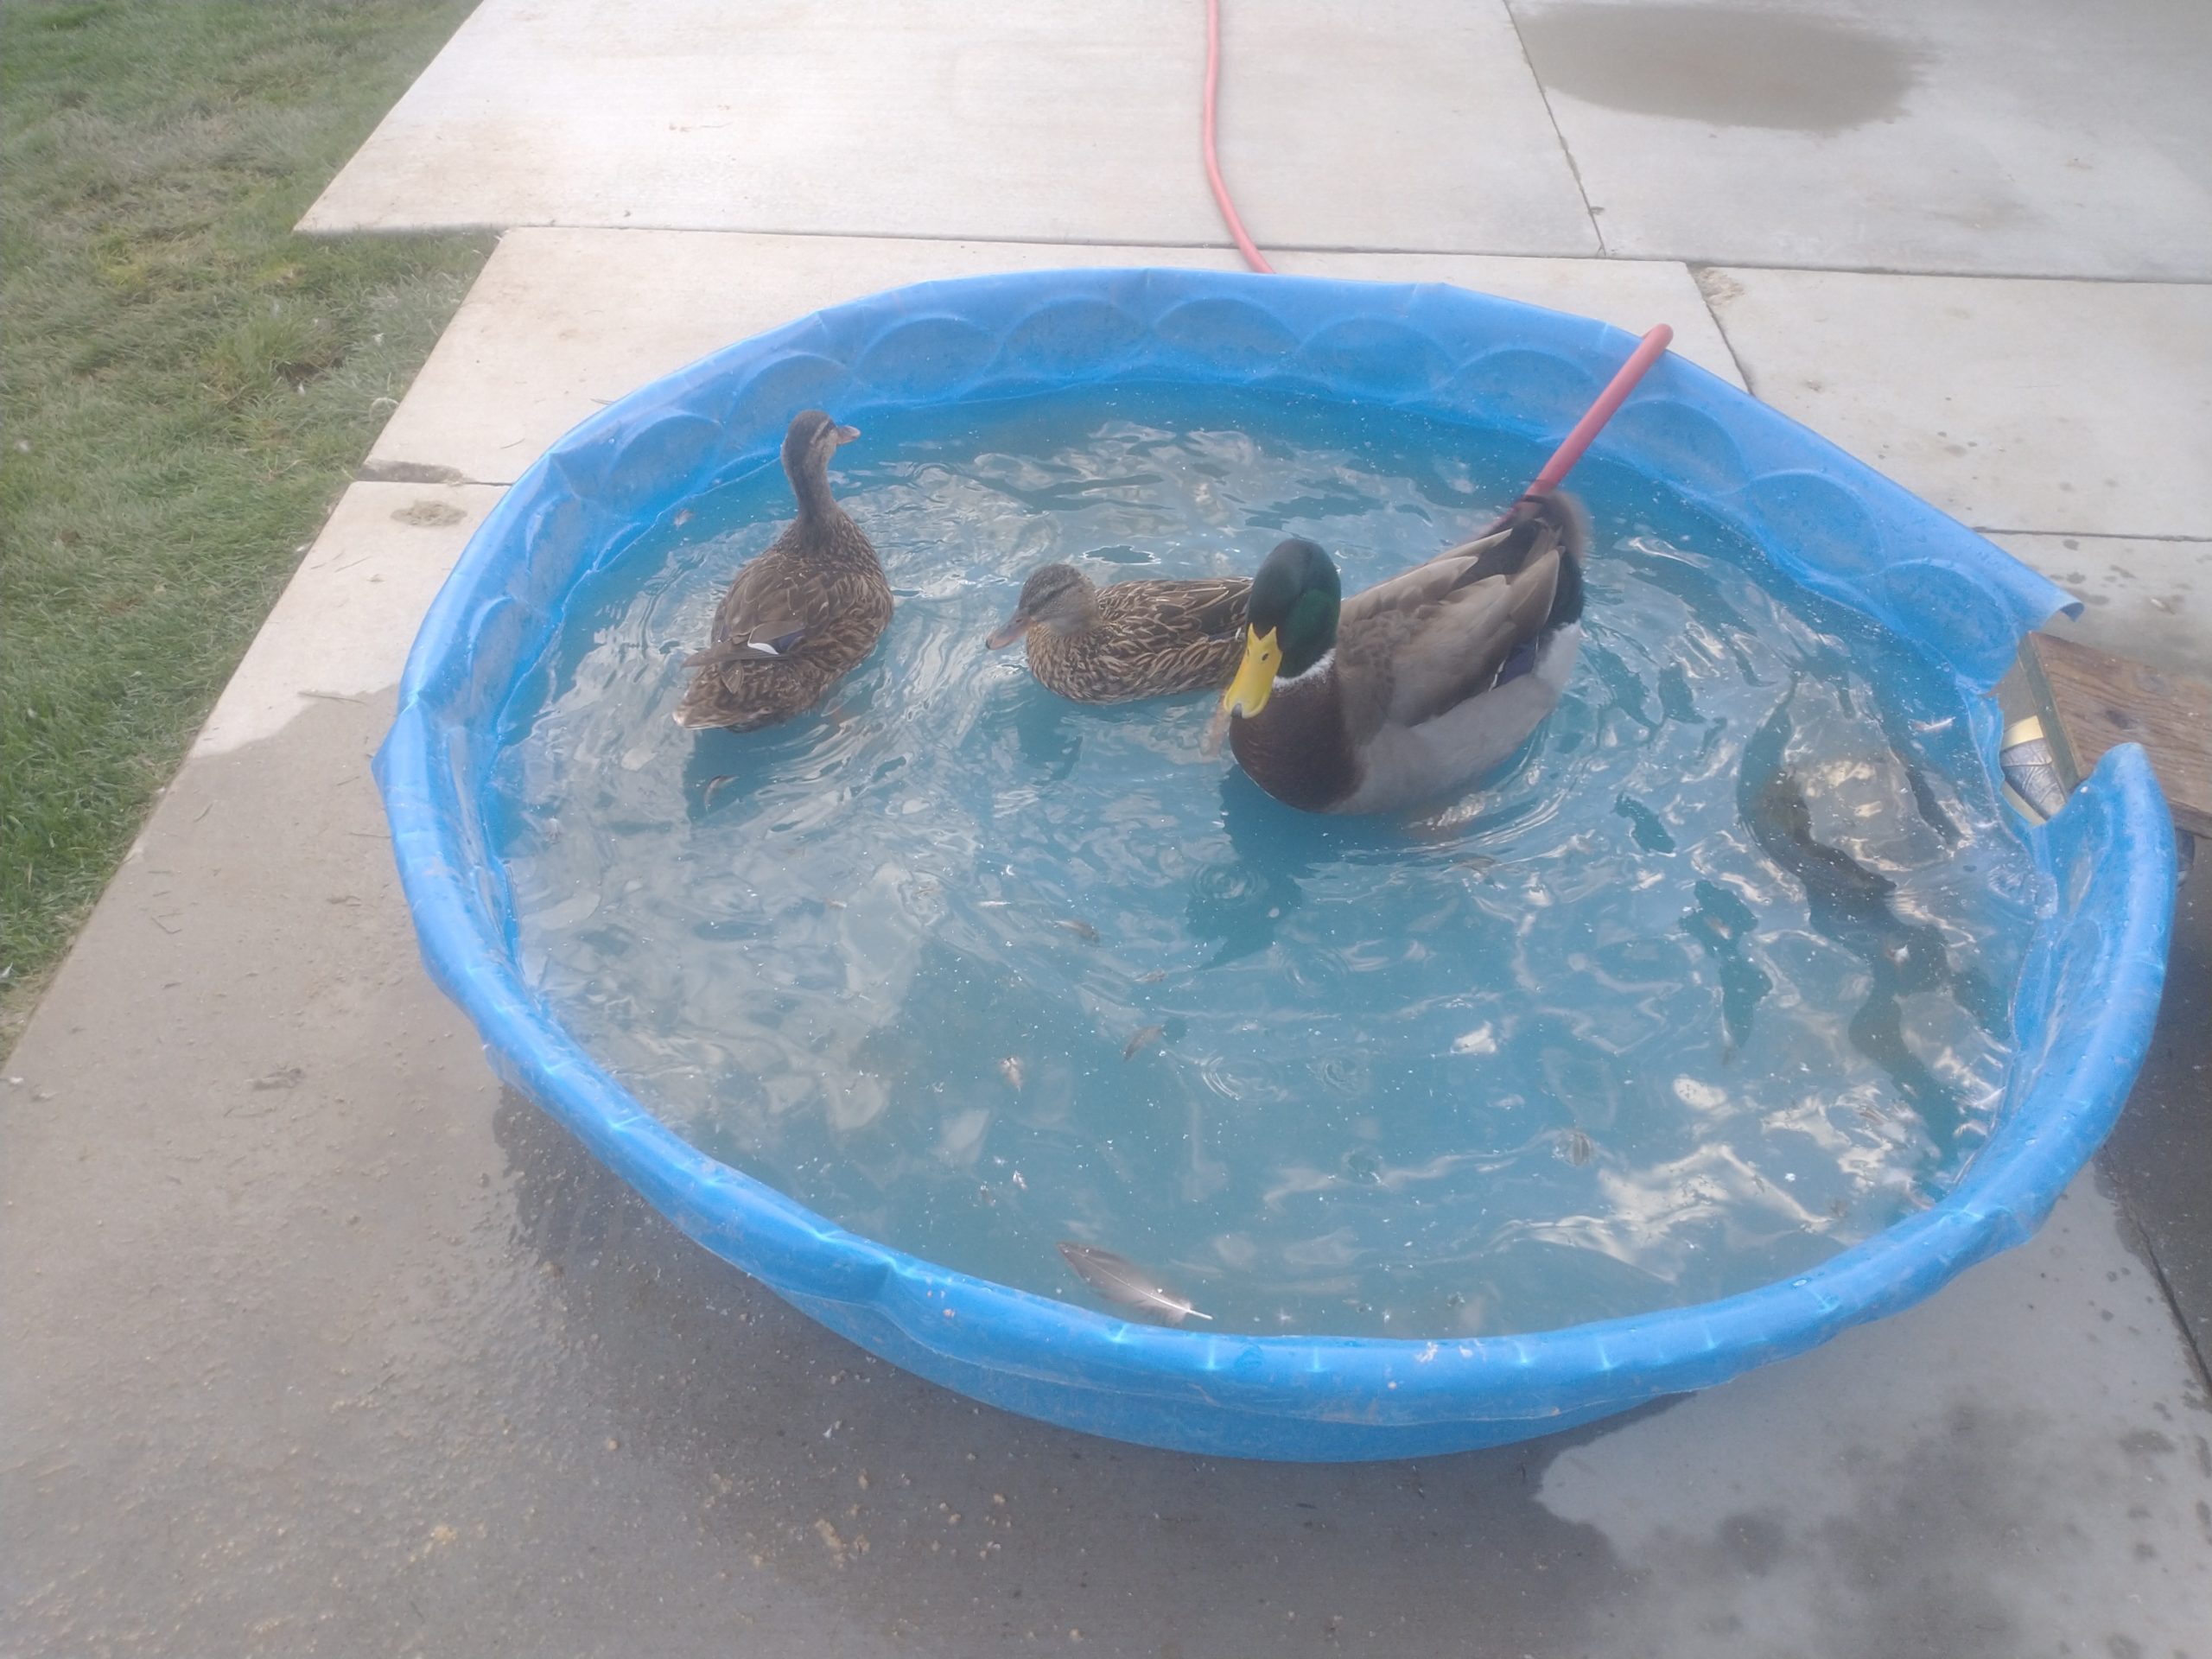 ducks in a kiddie pool